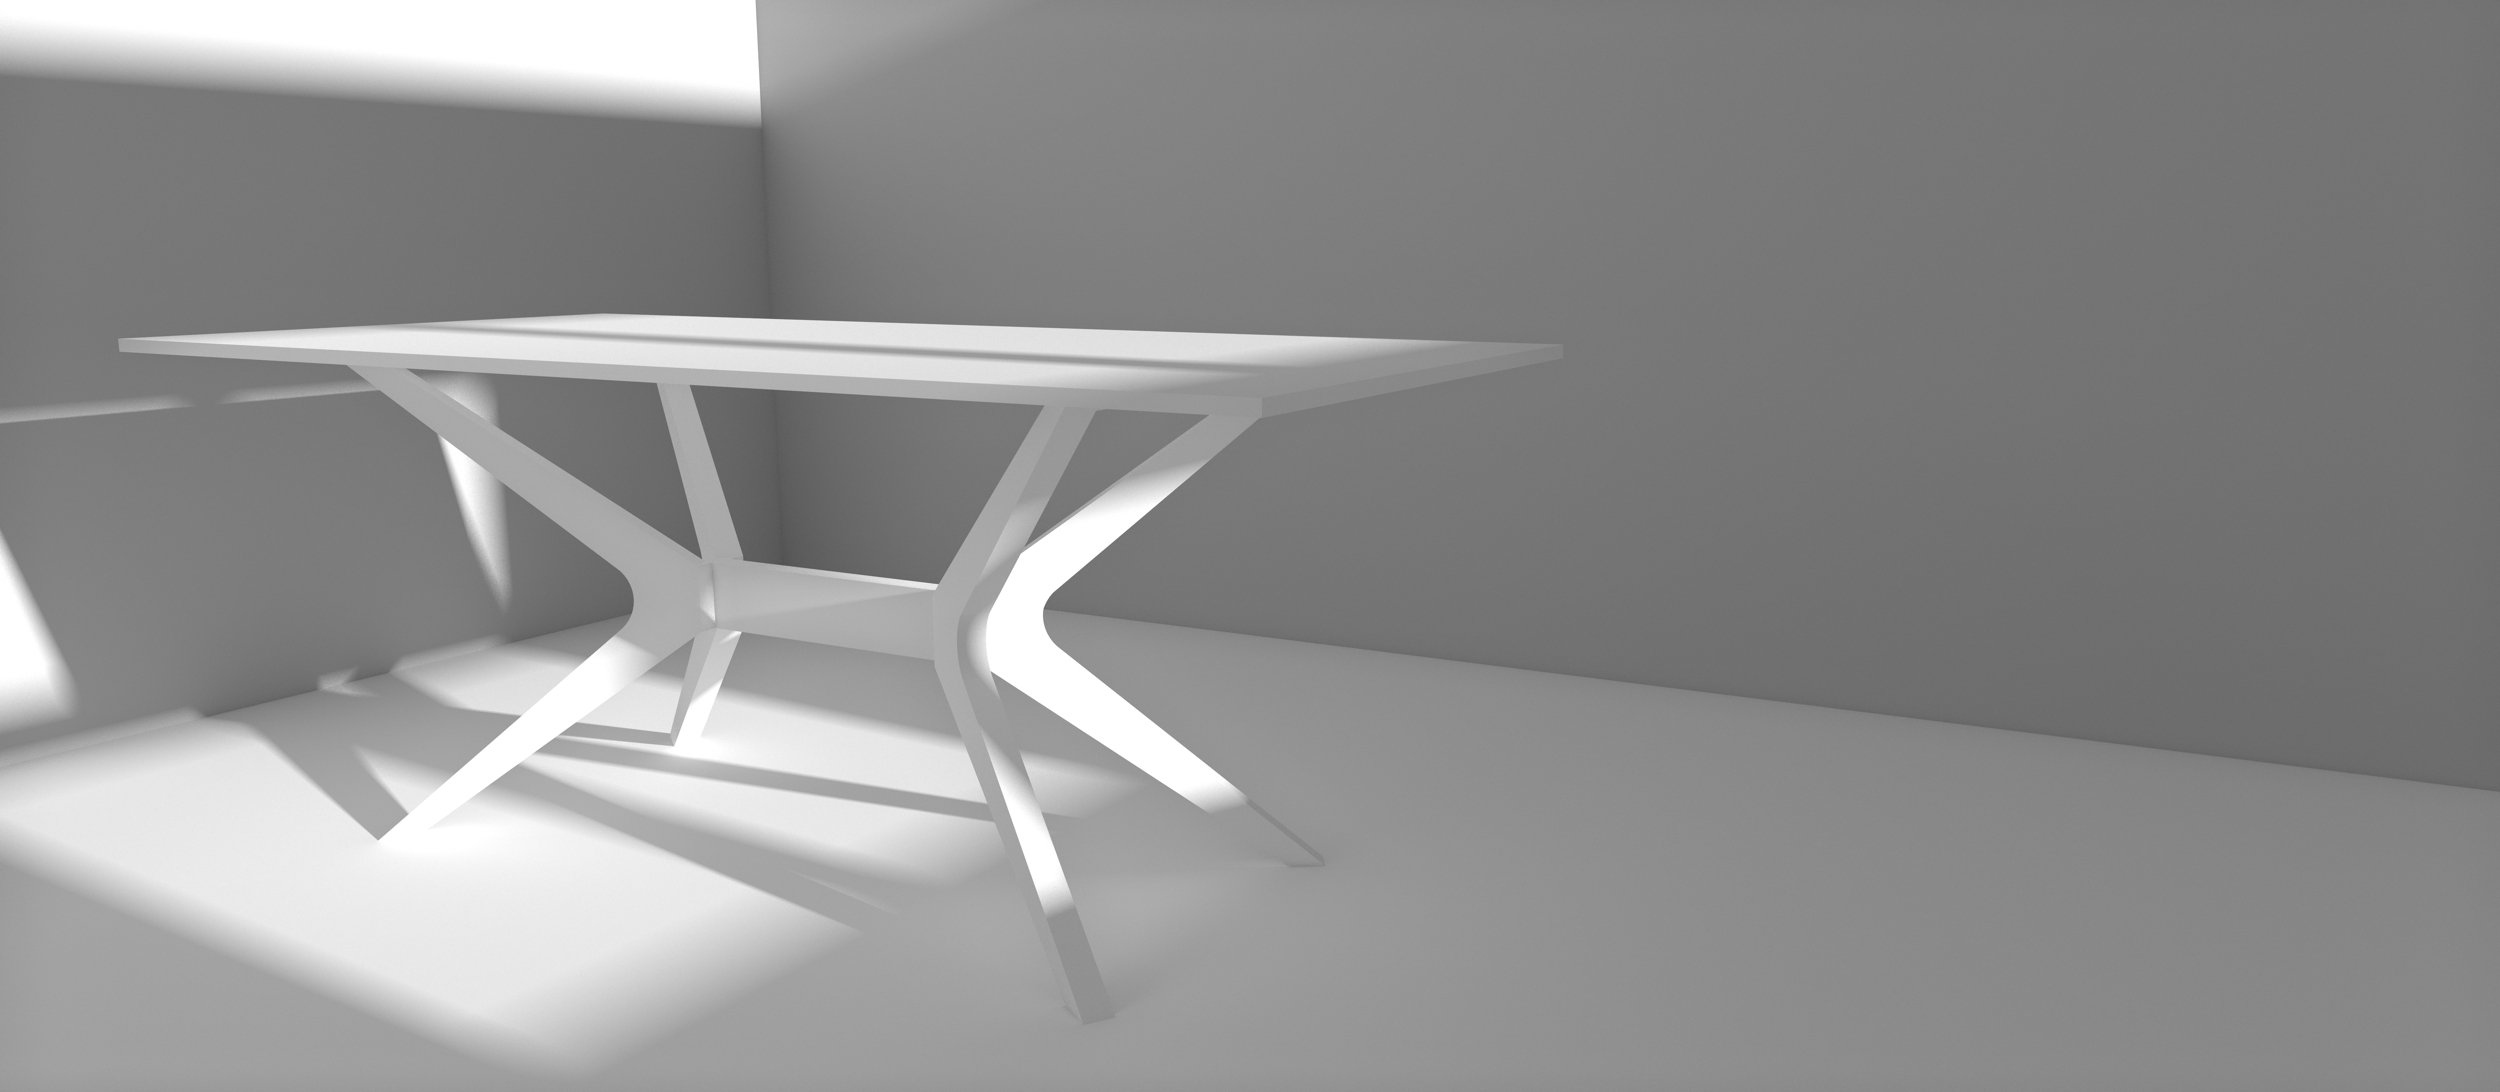  Rendu final 3D d’une table 